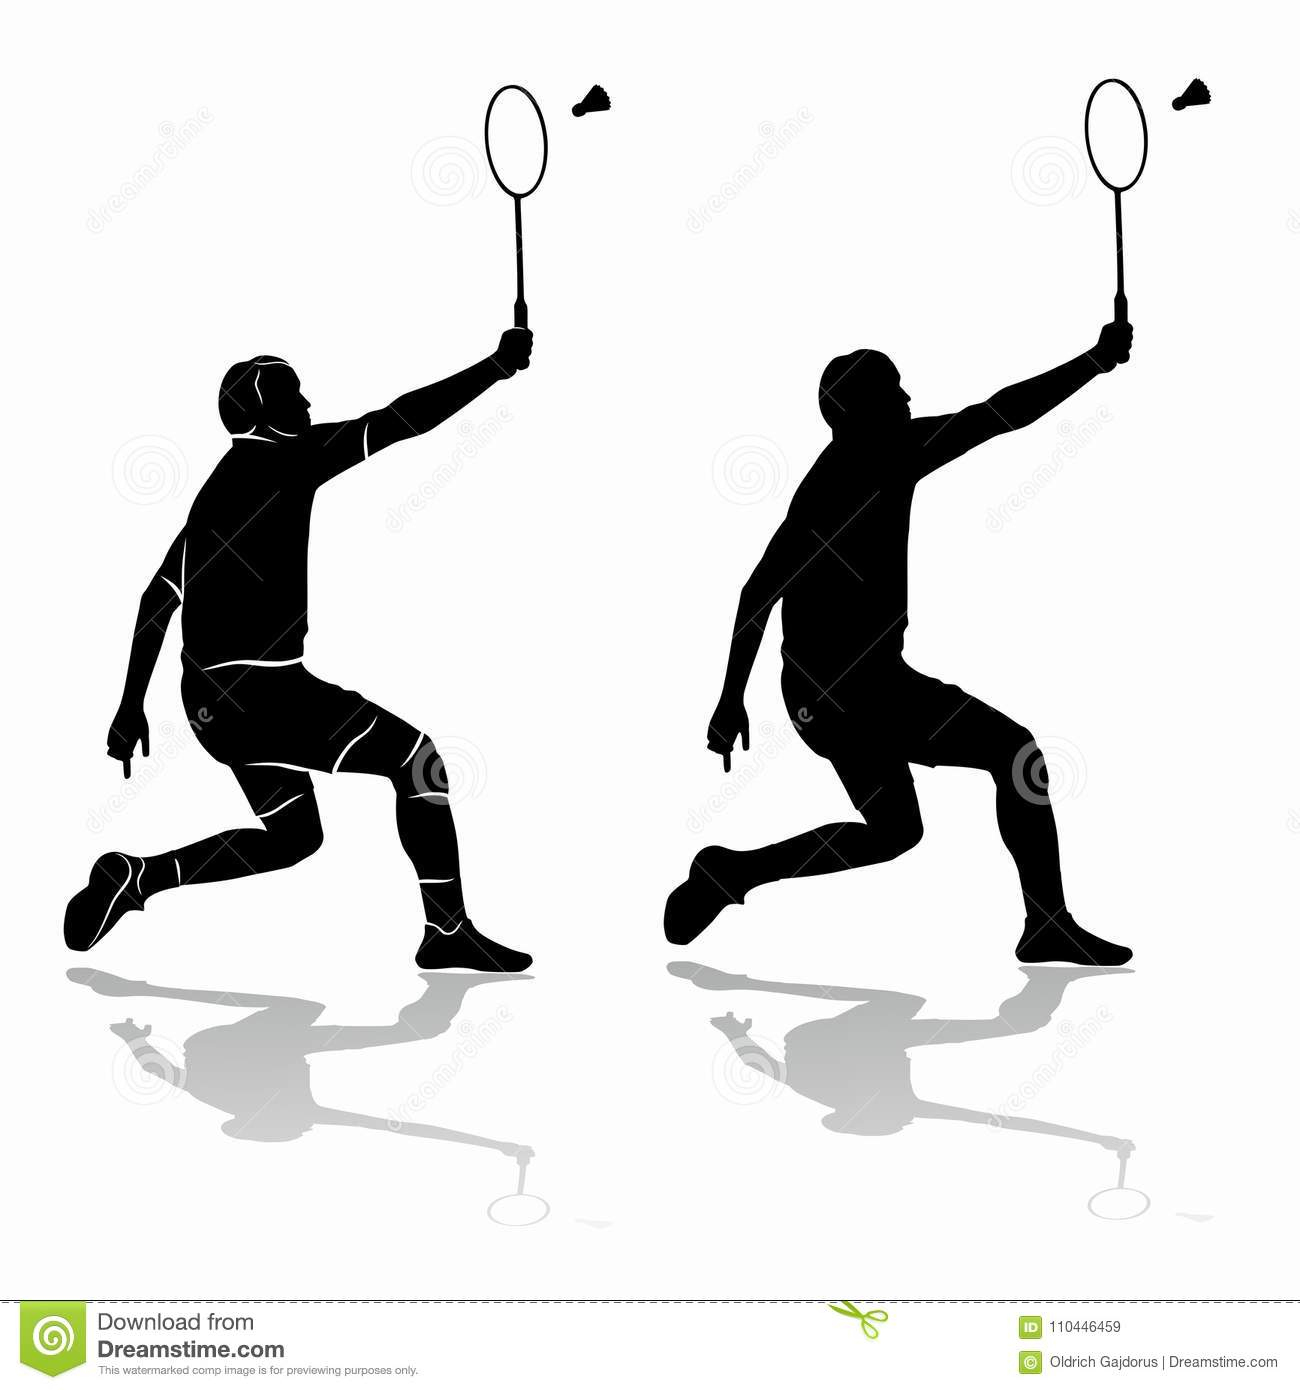 Silhouette D&amp;#039;Un Joueur De Badminton, Aspiration De Vecteur concernant Dessin De Badminton 